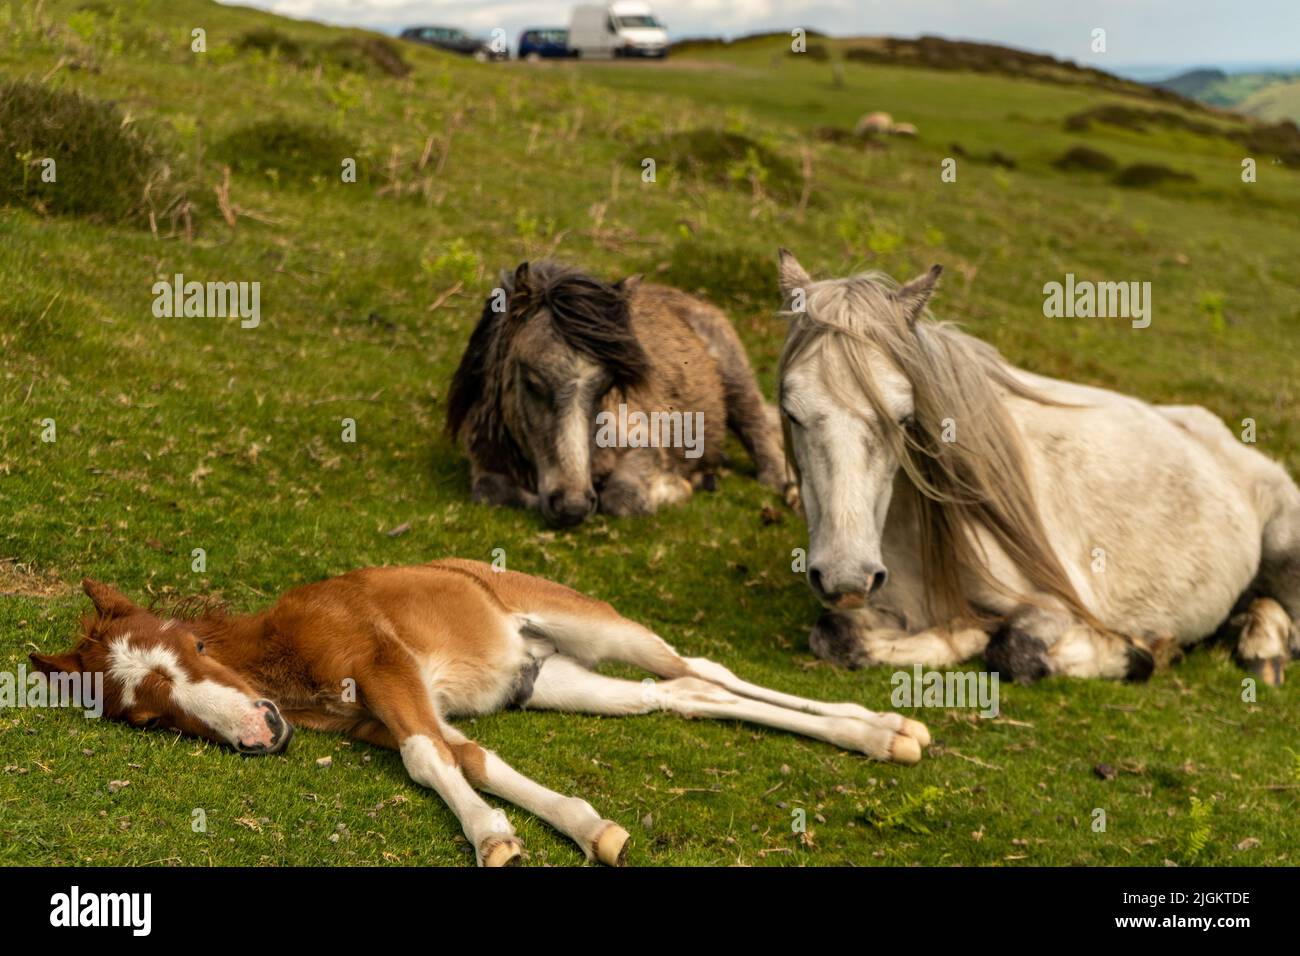 Family of wild horses Stock Photo